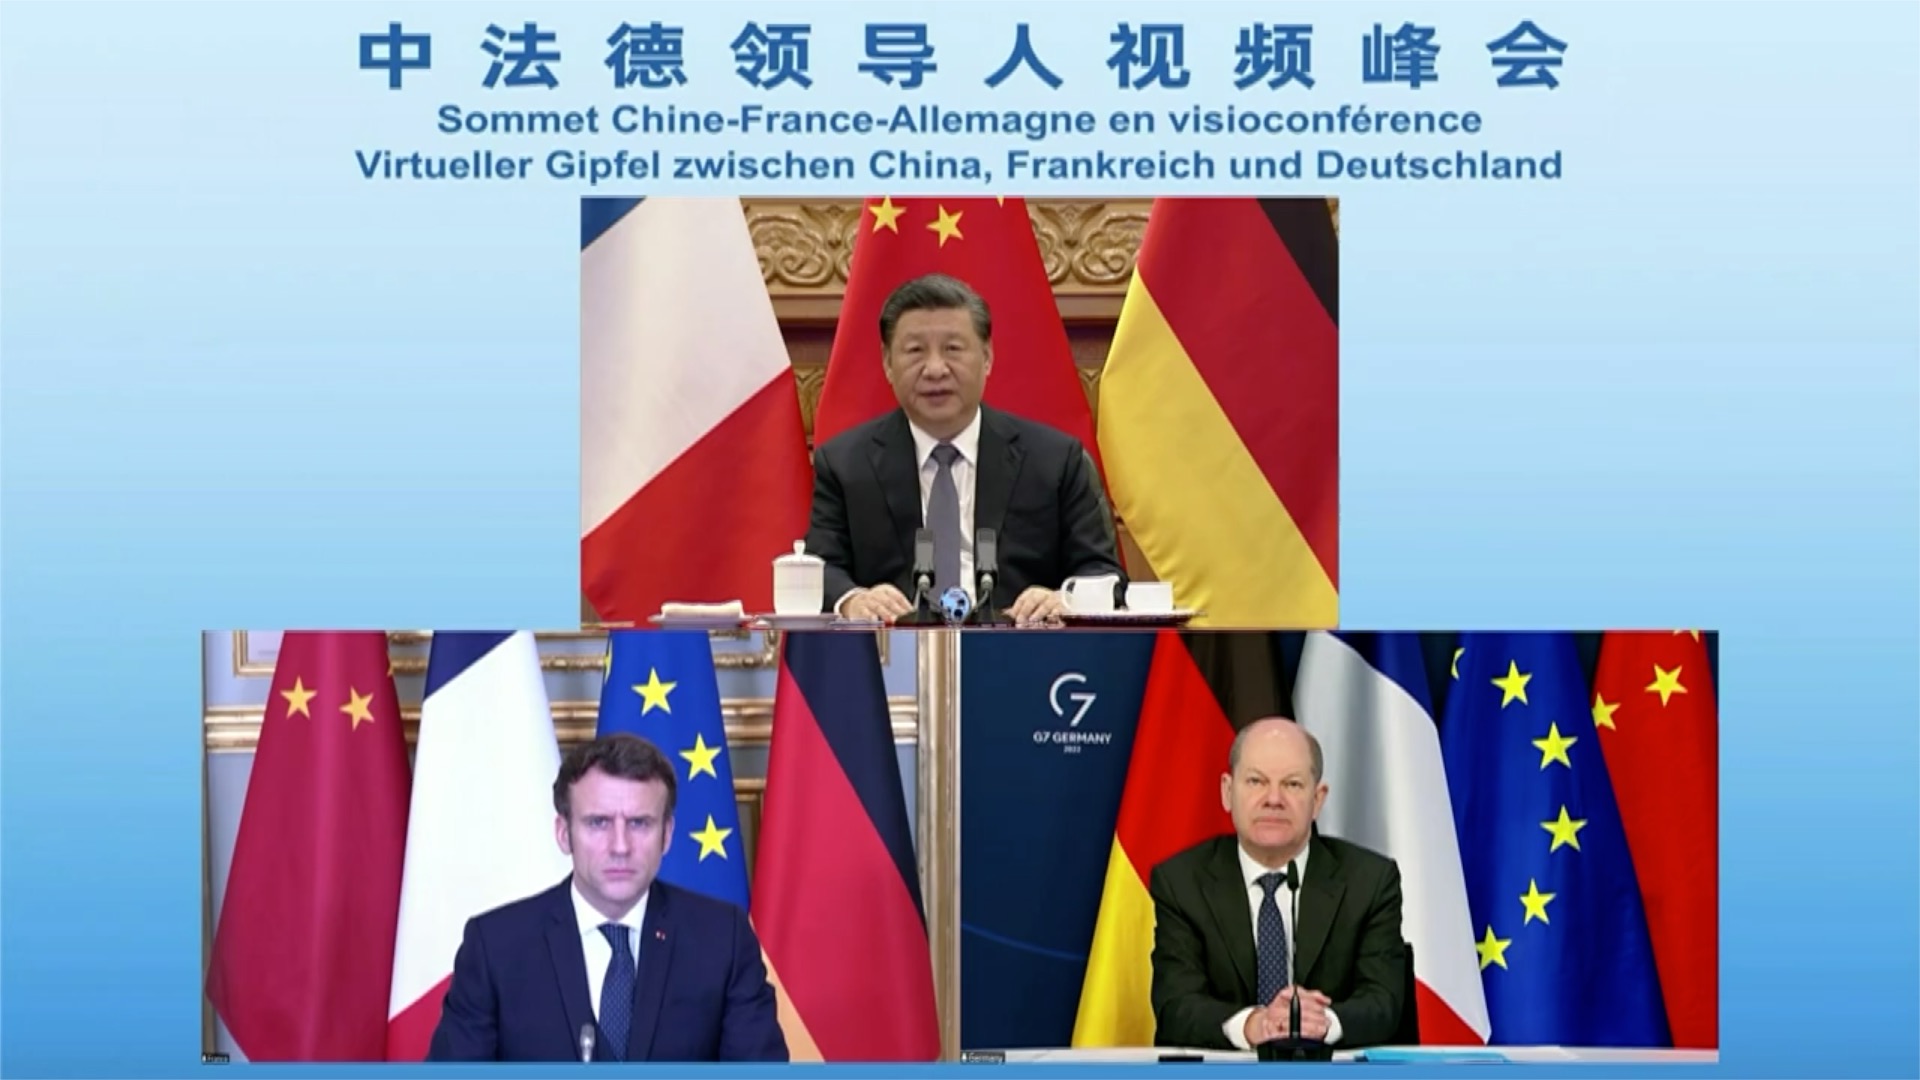 Председатель КНР Си Цзиньпин провёл во вторник виртуальный саммит с президентом Франции Эмманюэлем Макроном и канцлером Германии Олафом Шольцем. Скриншот © YouTube / South China Morning Post